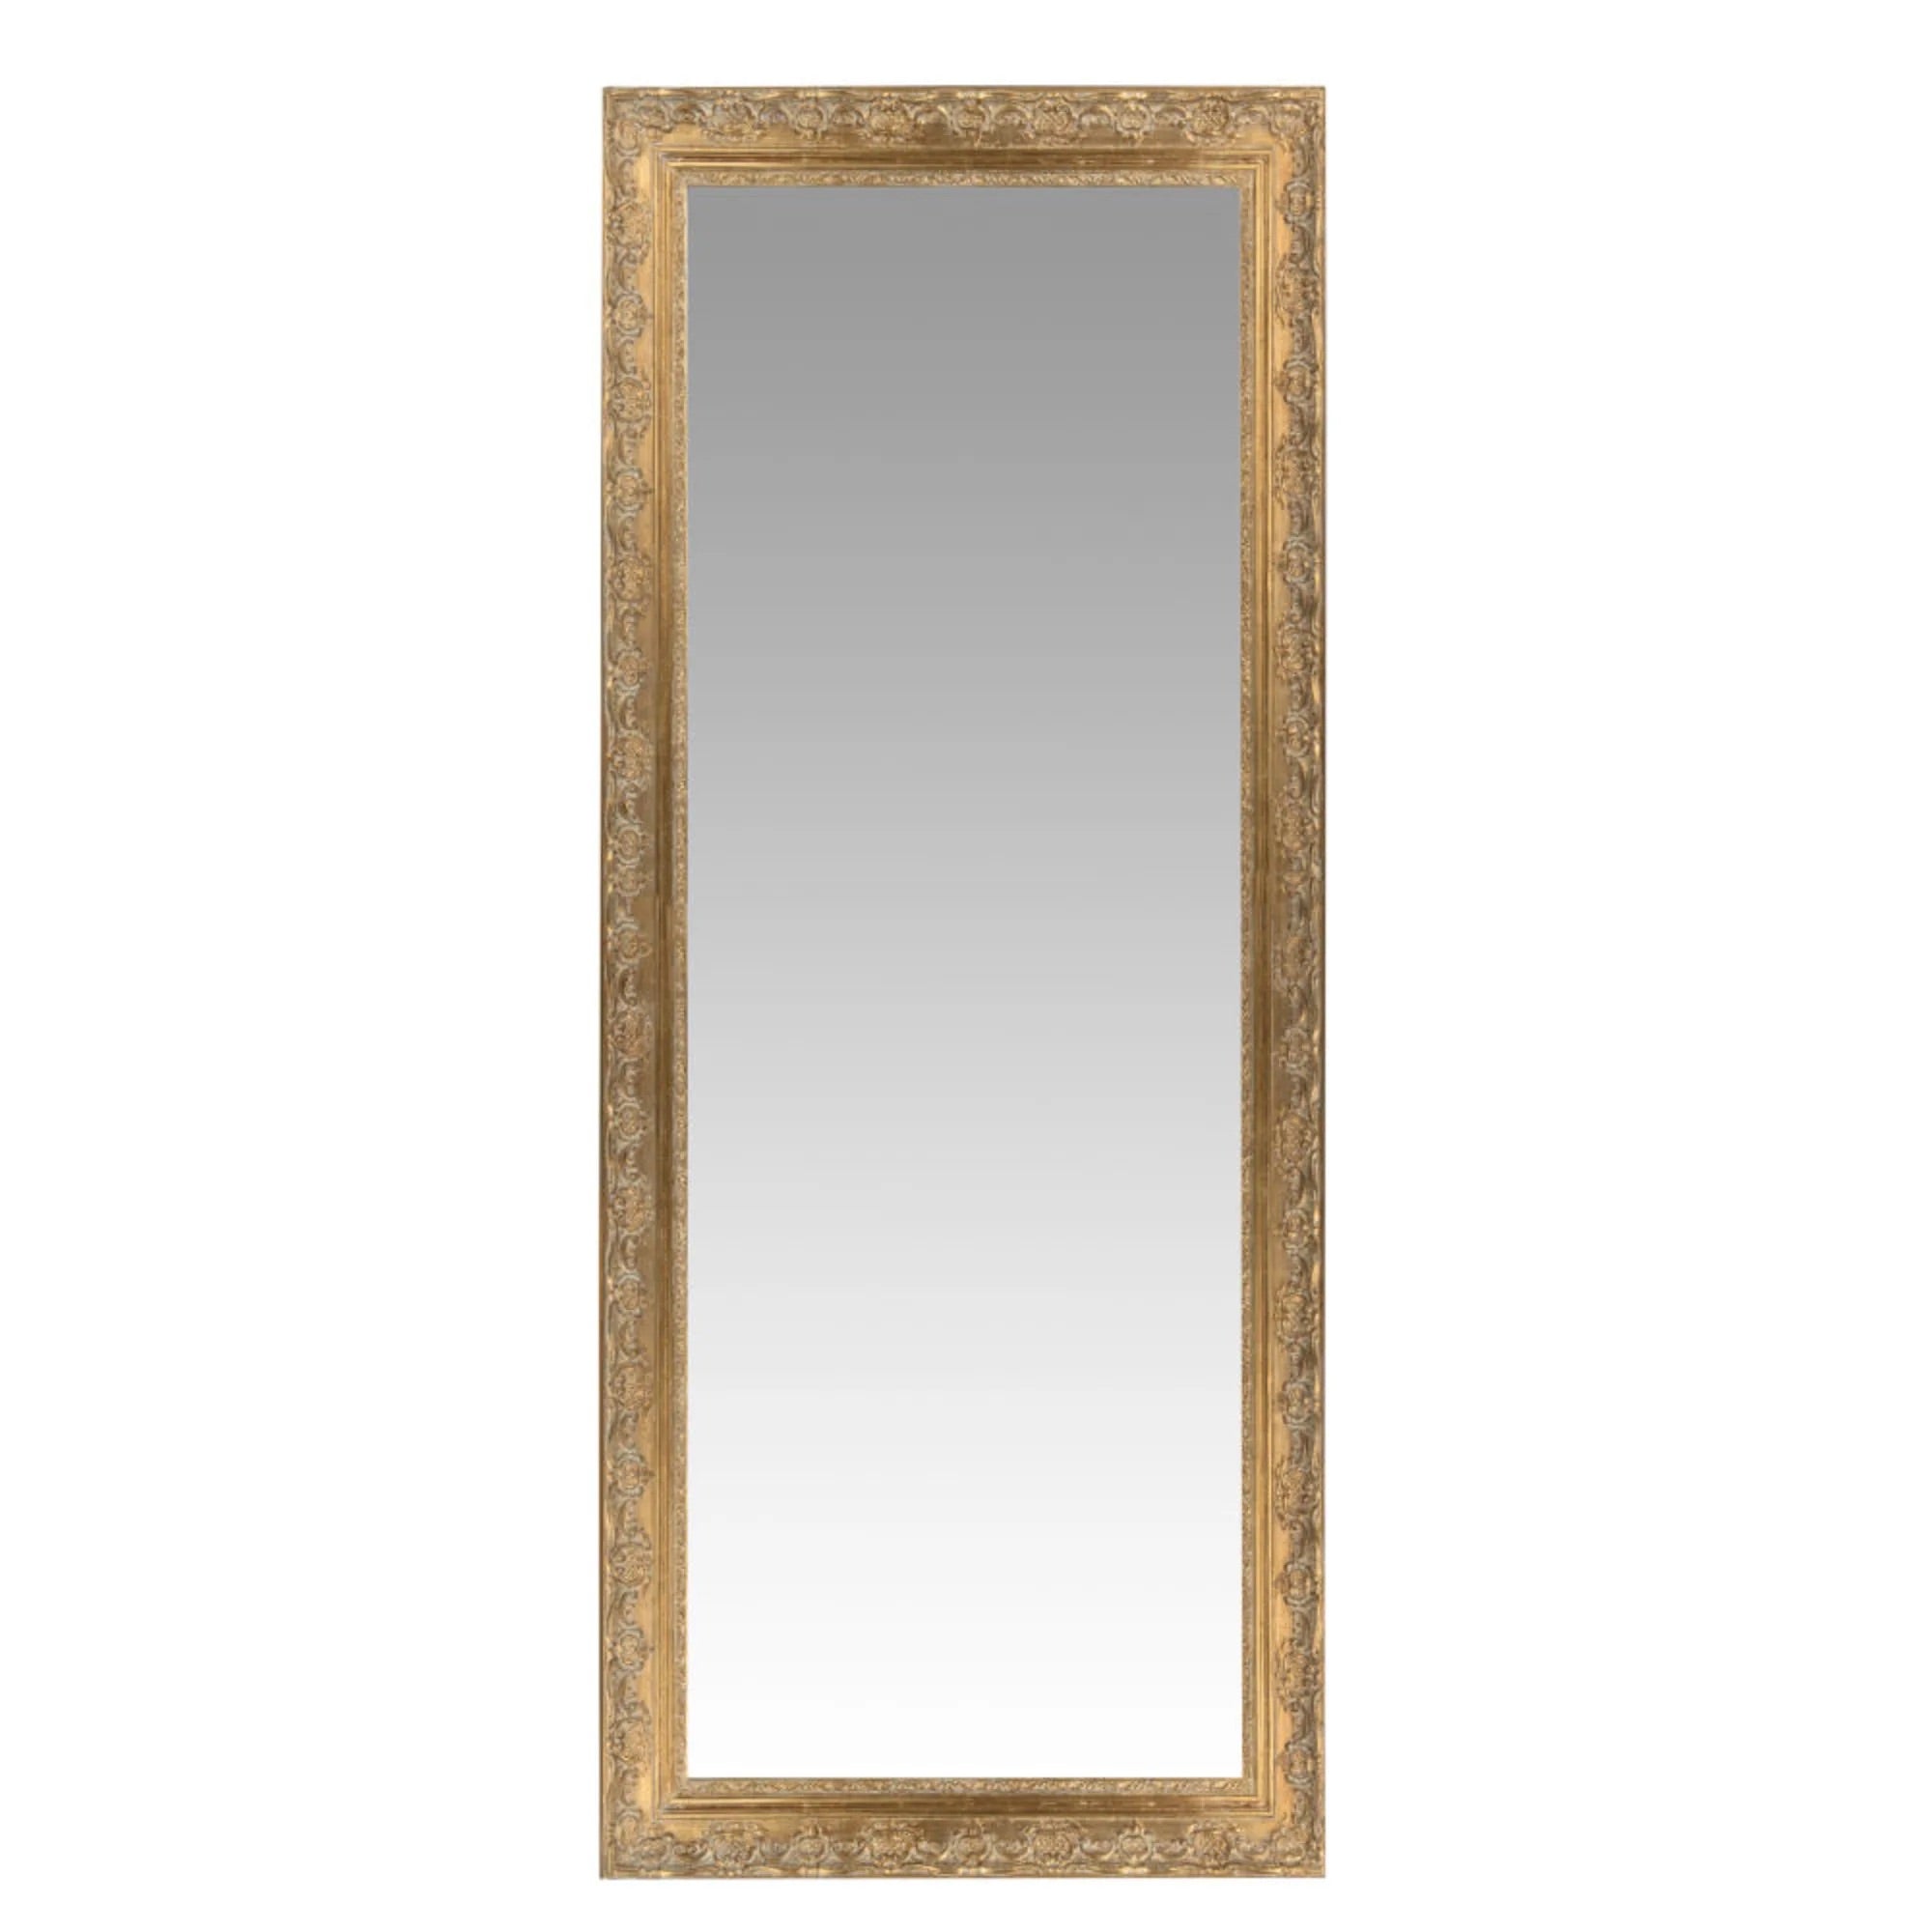 Francy mirror